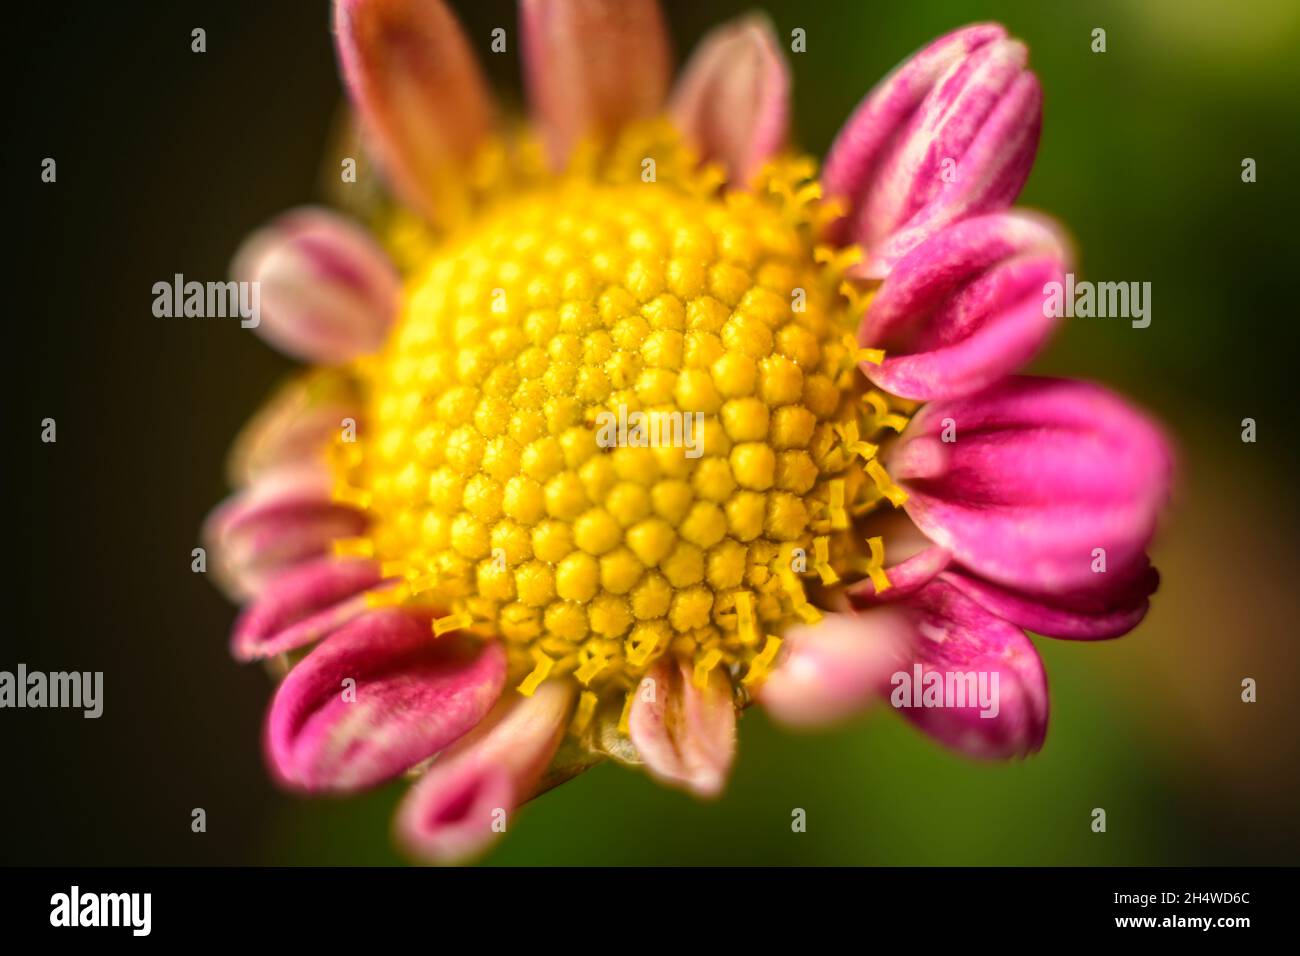 Chrysantheme 'bodeka' eintypige Makrofotografie mit Blüten in Nahaufnahme. Die schöne Struktur des goldgelben Blütenkopfes. Stockfoto